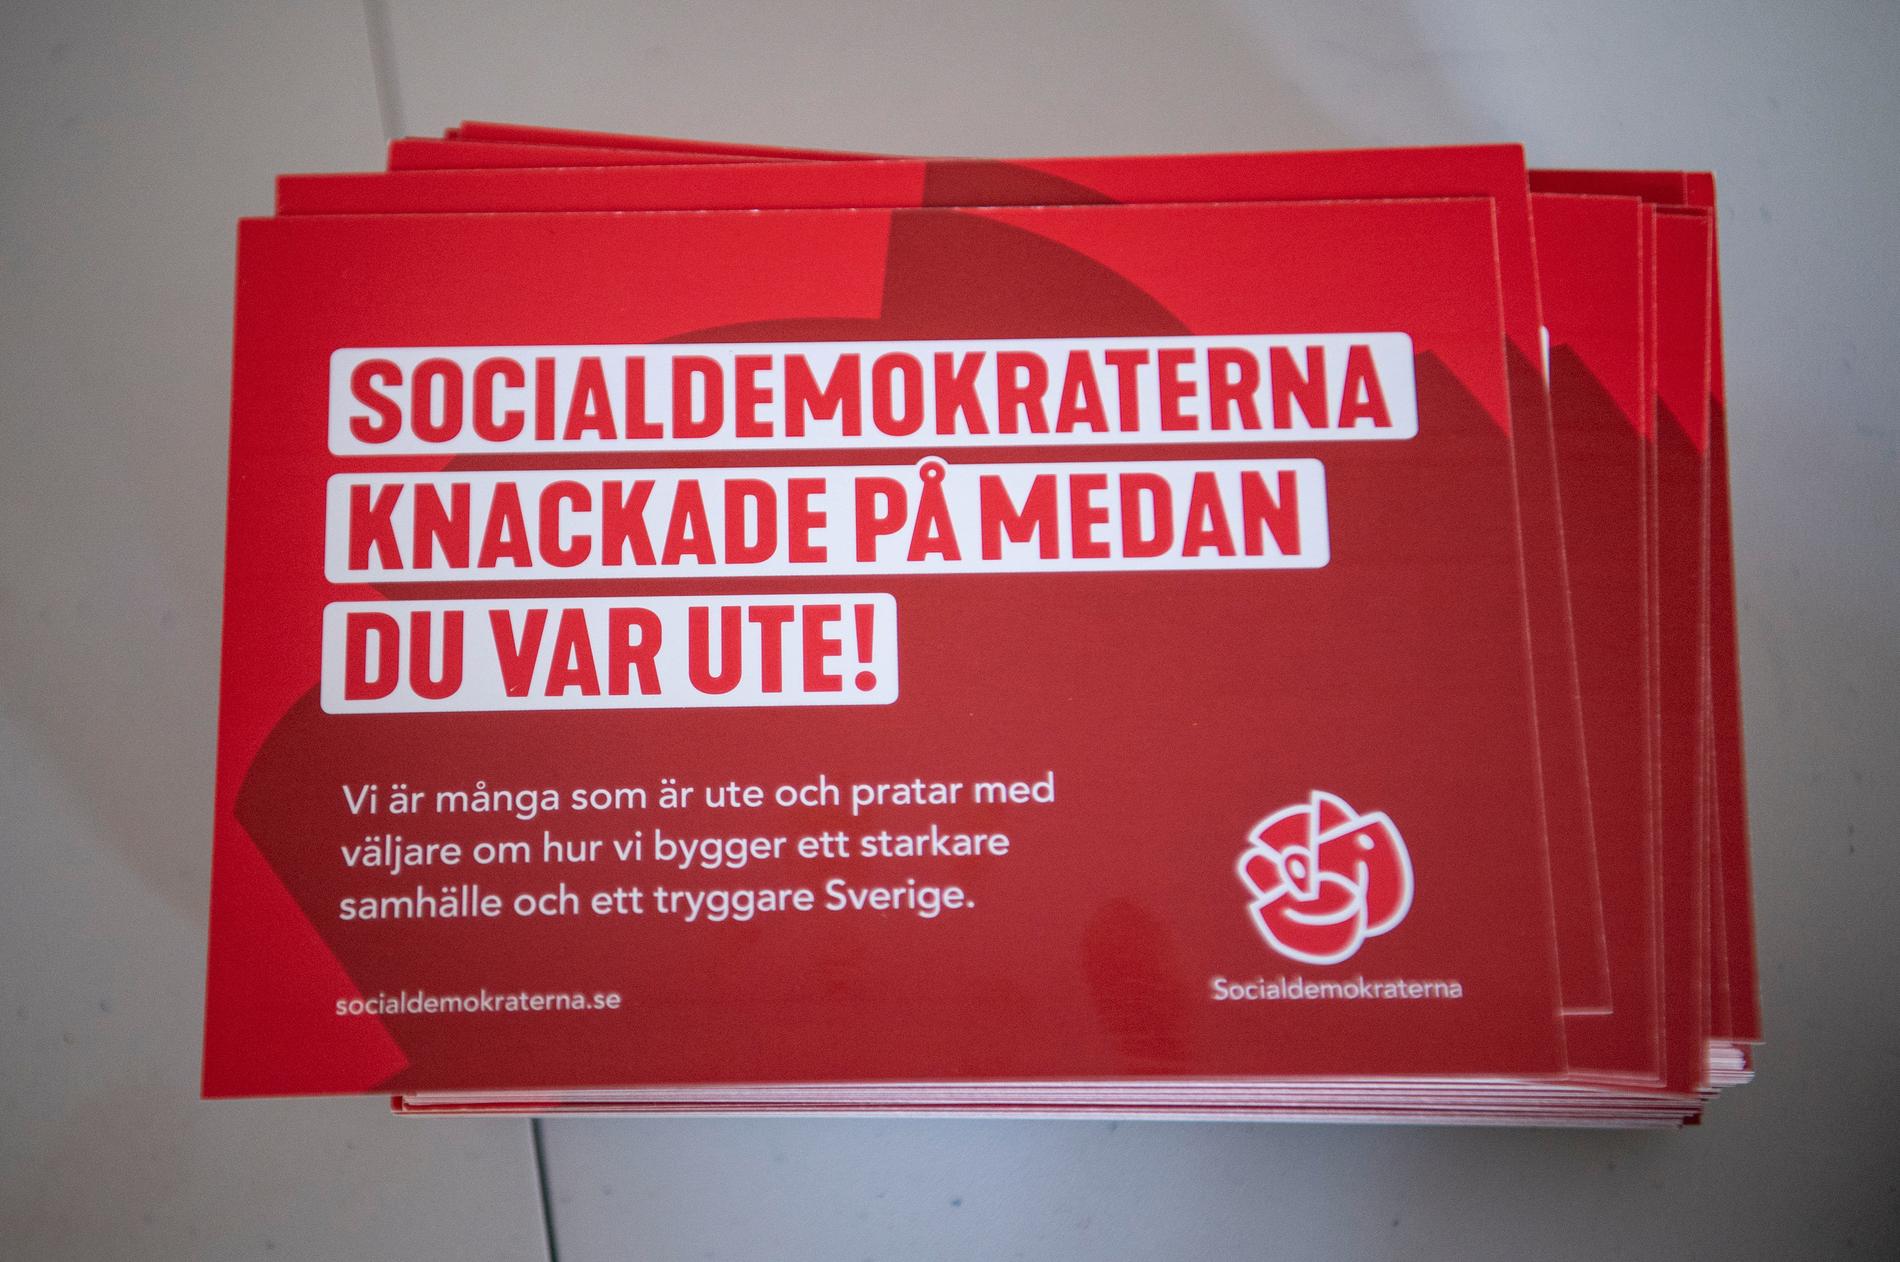 Socialdemokraterna knackade på medan du var ute meddelar ett vykort som ingår i dörrknackningsmaterialet för Socialdemokraterna.